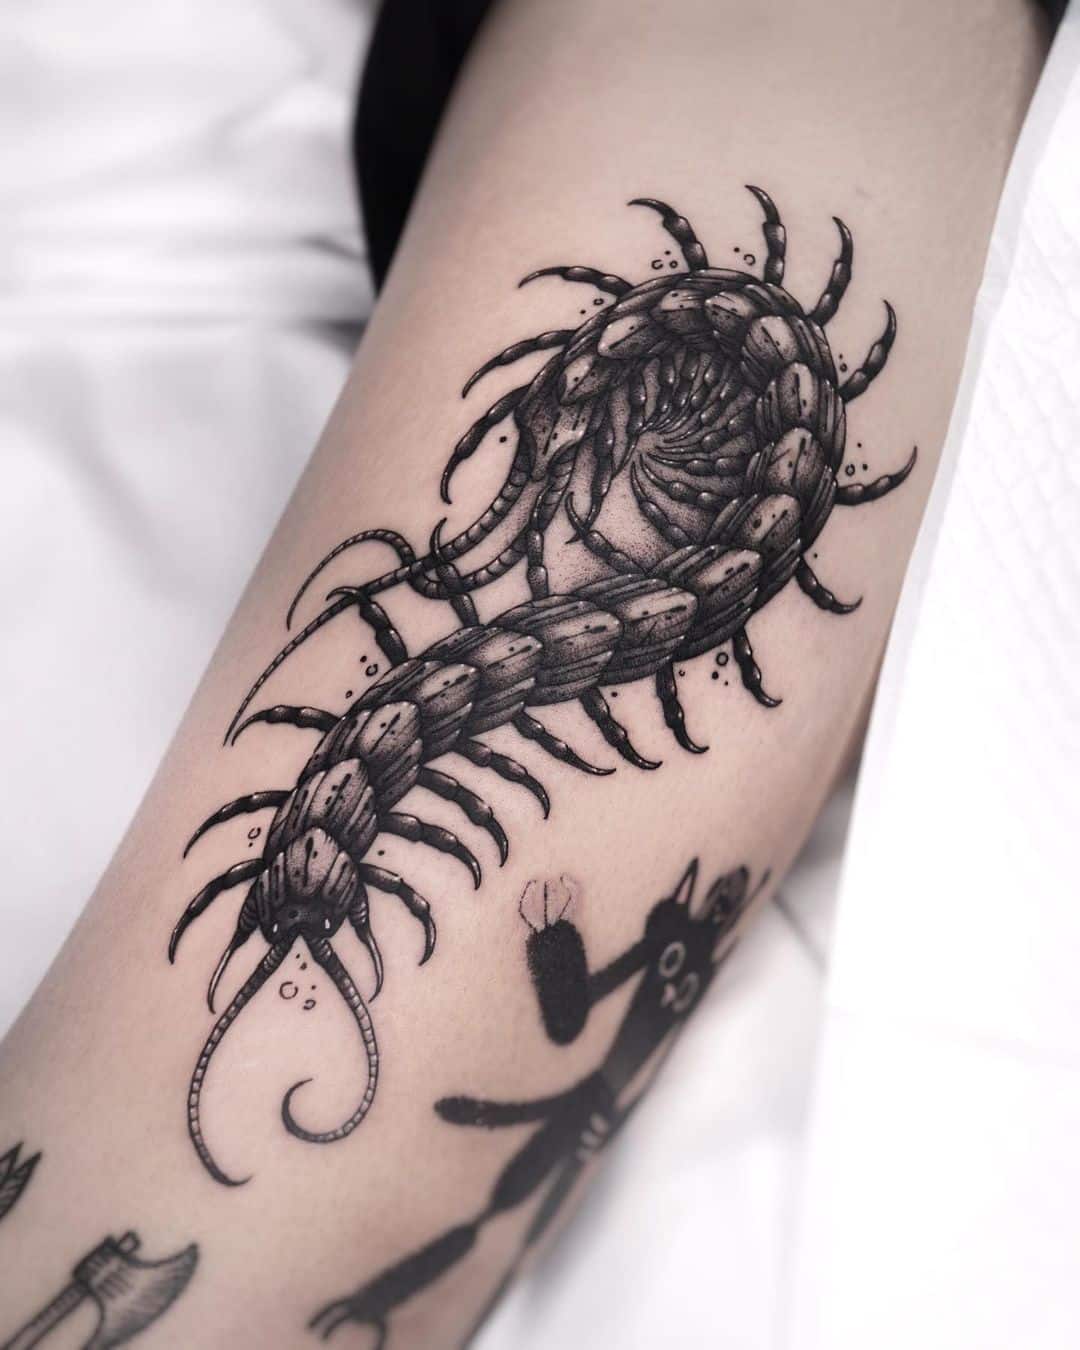 Centipede tattoo designs